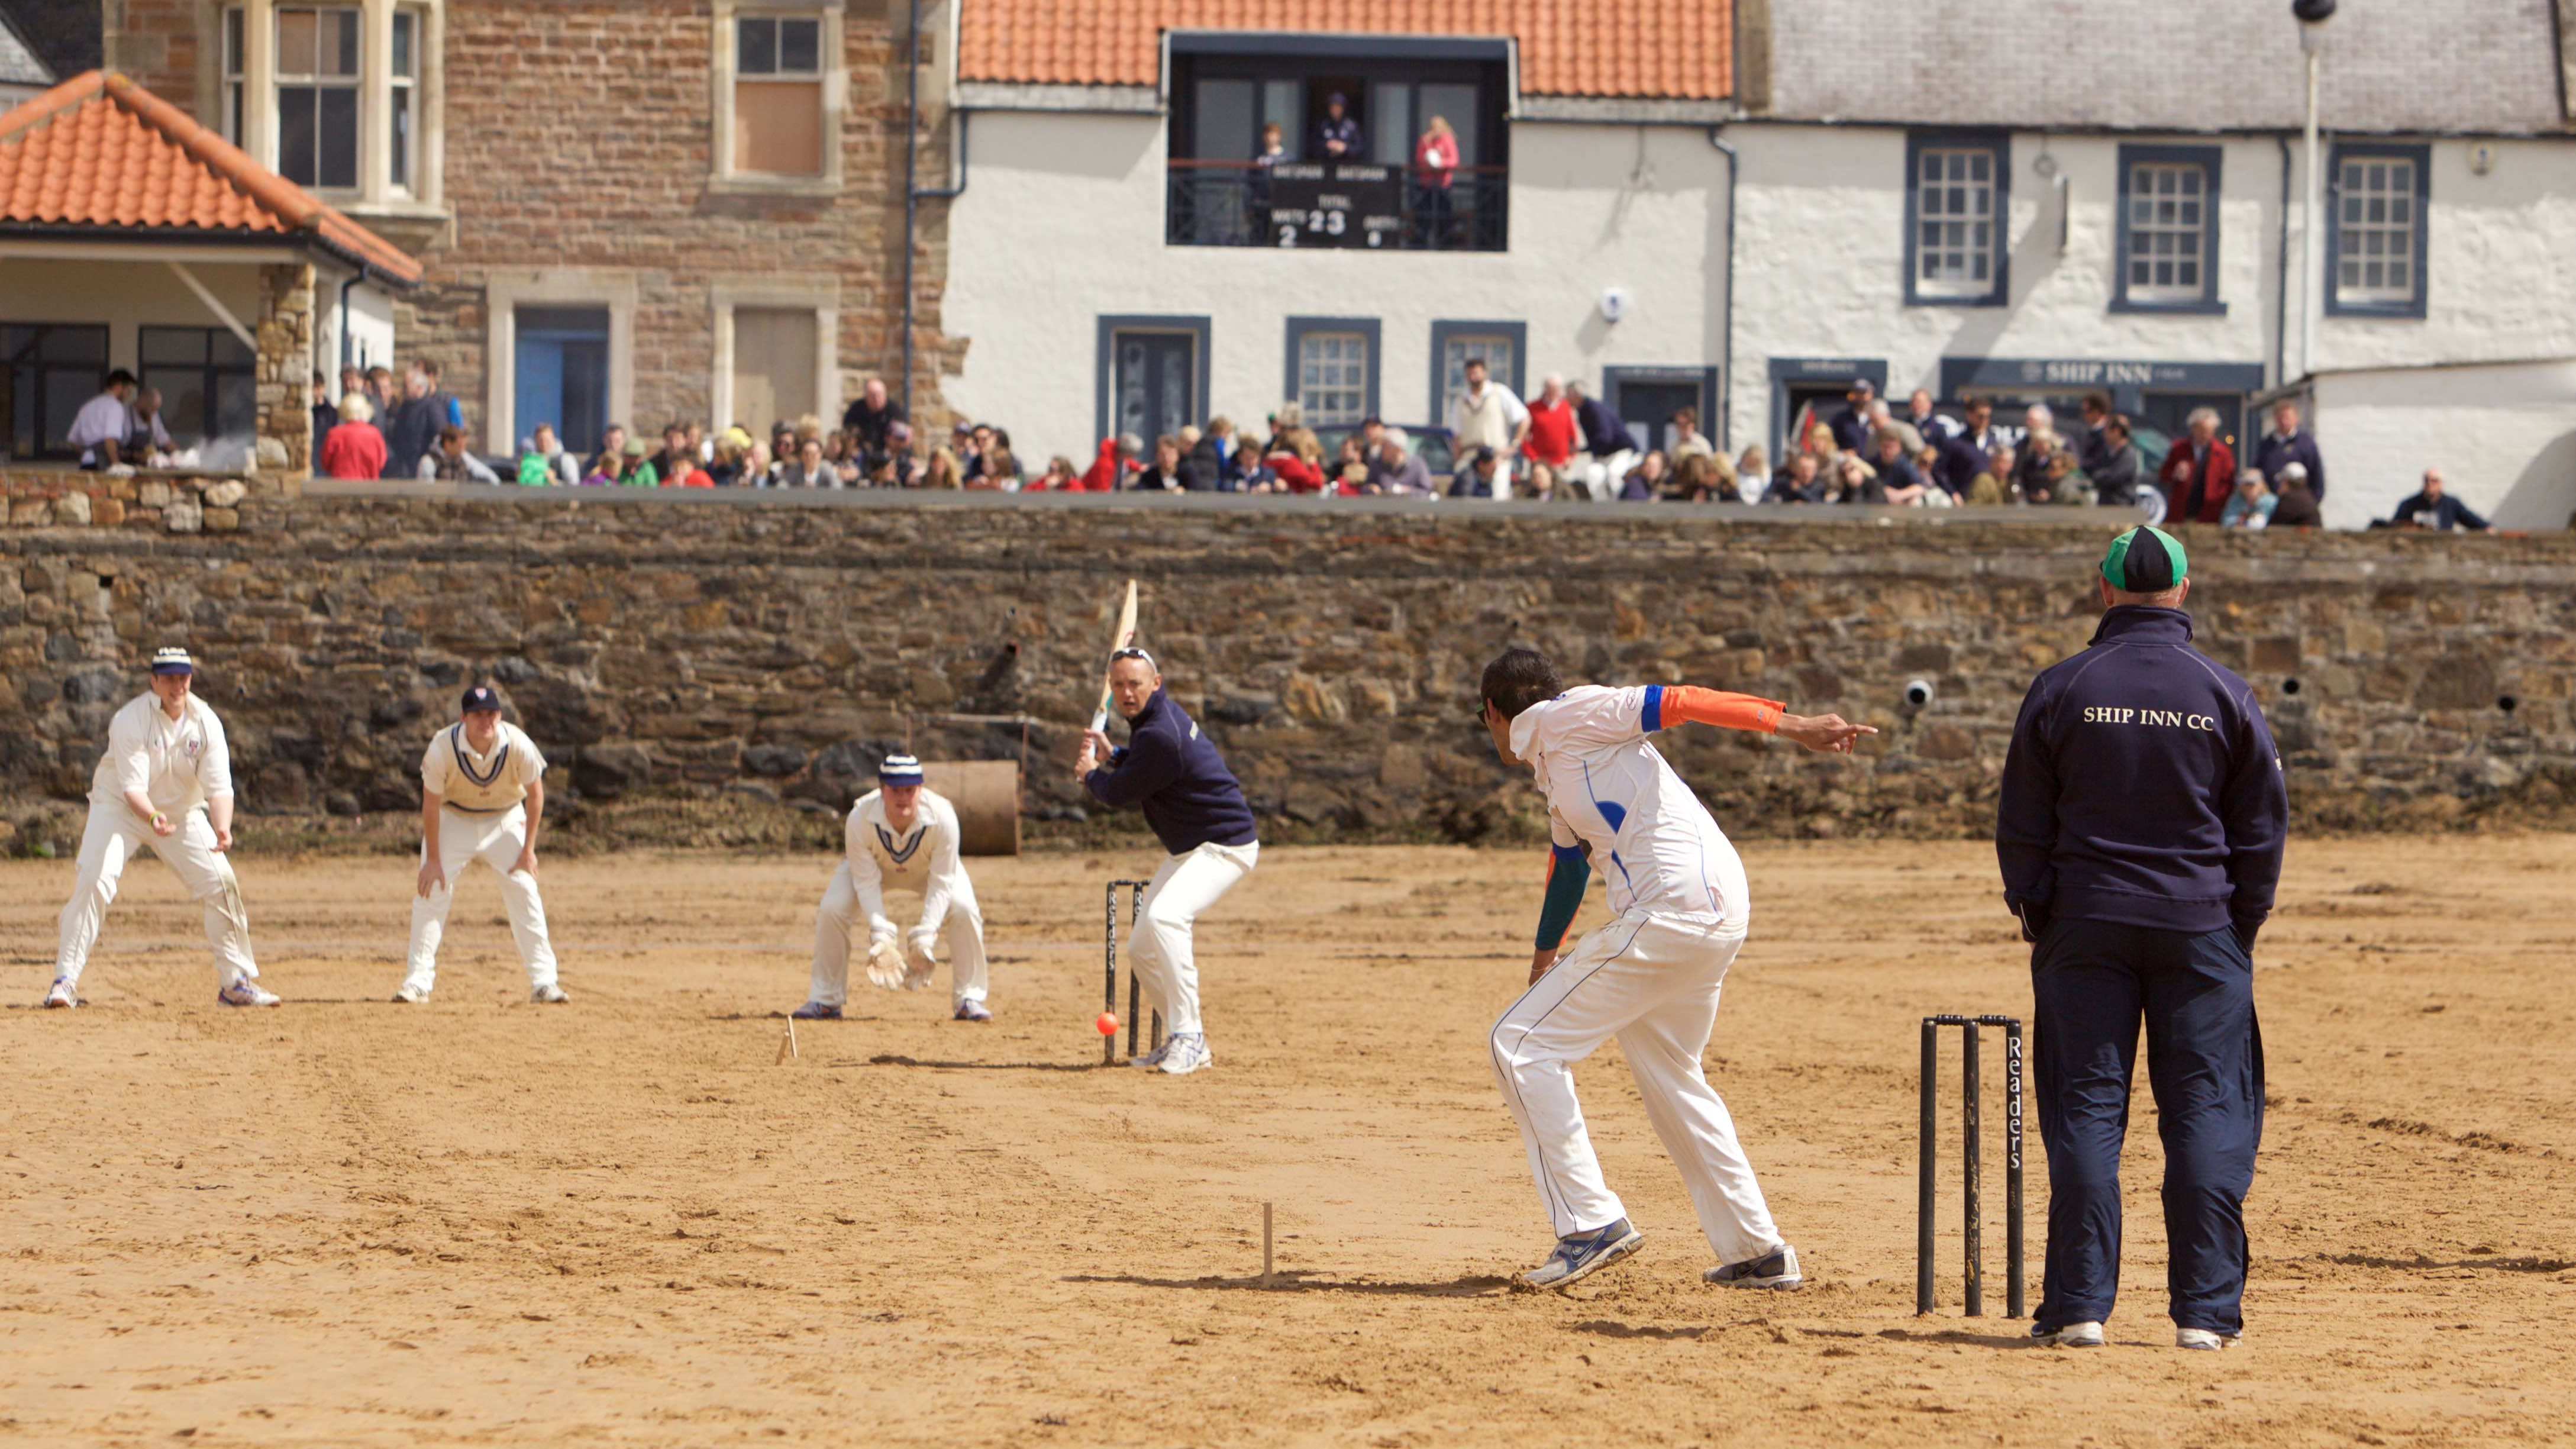 Cricket at The Ship Inn - Burghley Park CC